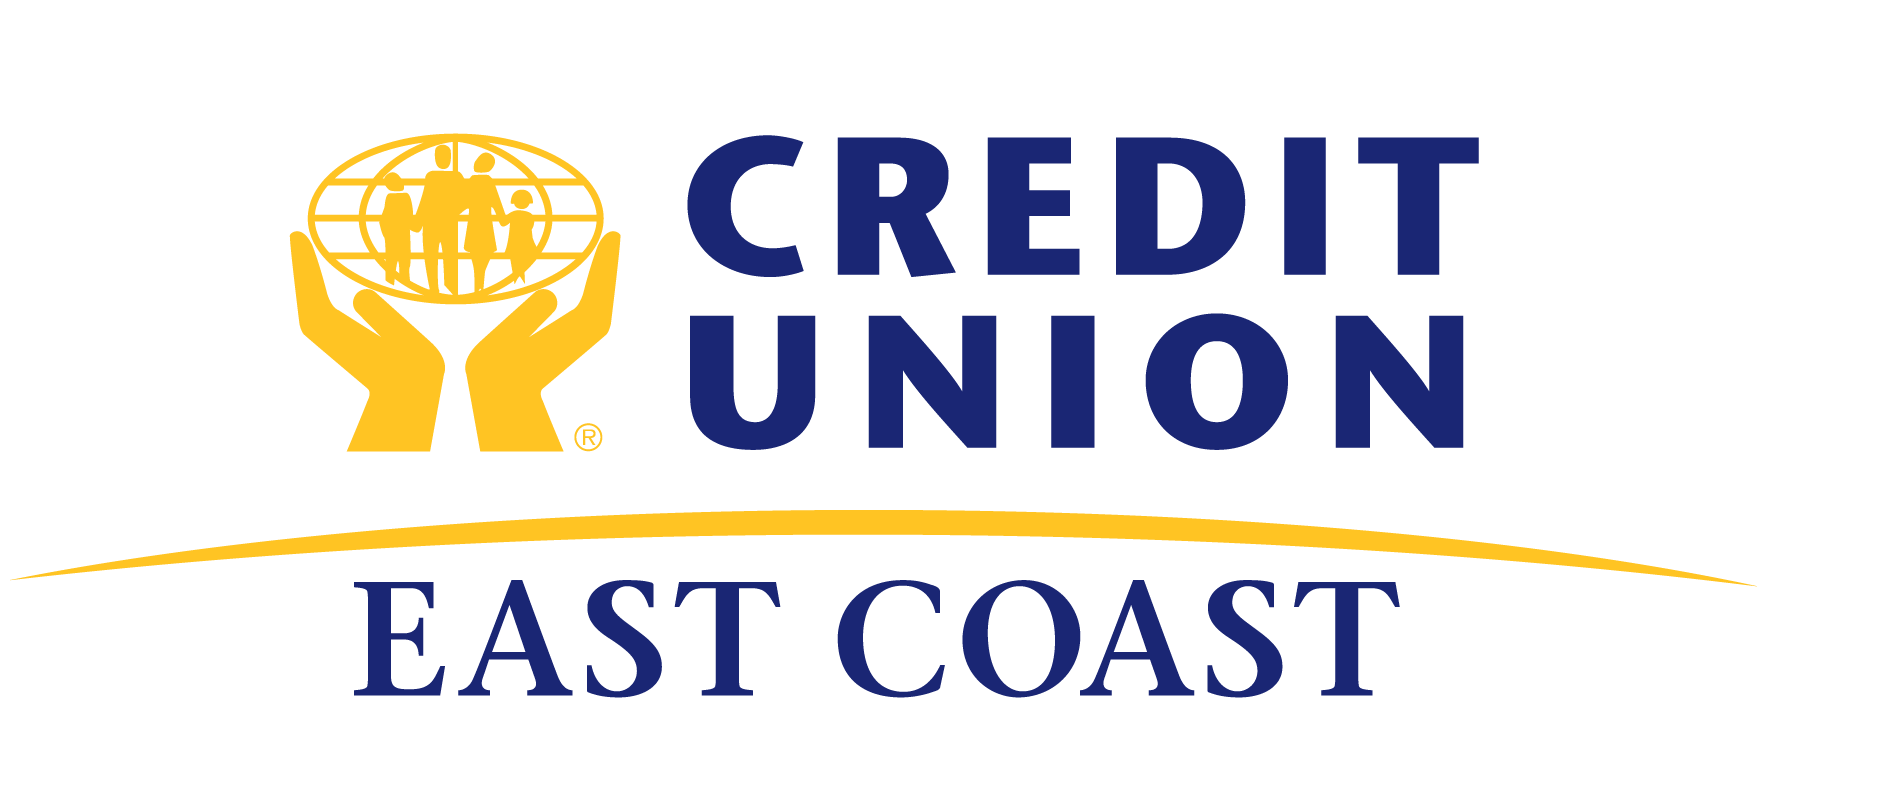 East Coast Credit Union Ltd